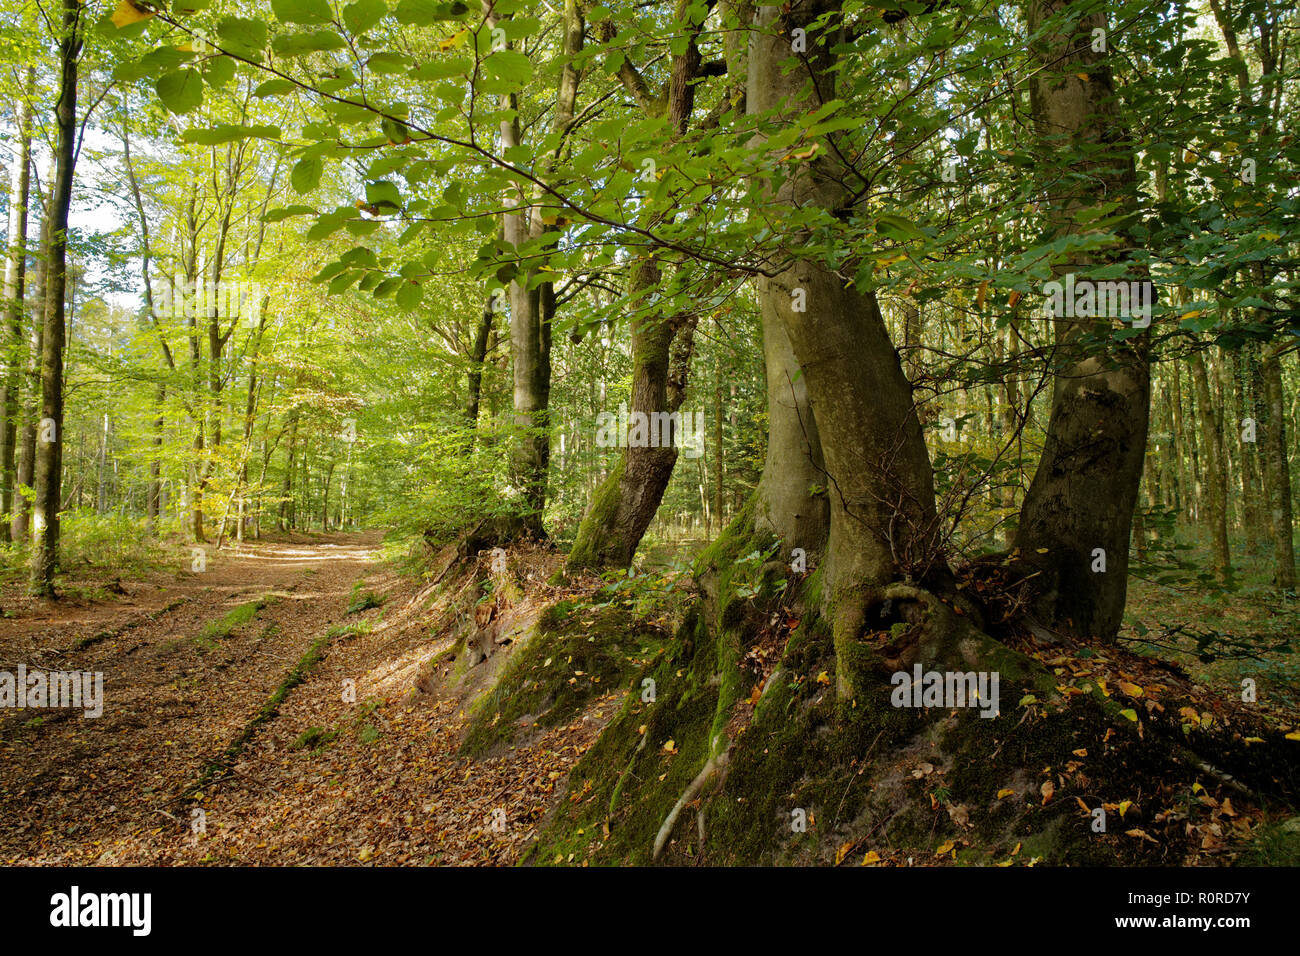 Forest, Stiekelkamp, East Frisia, Lower Saxony, Germany Stock Photo